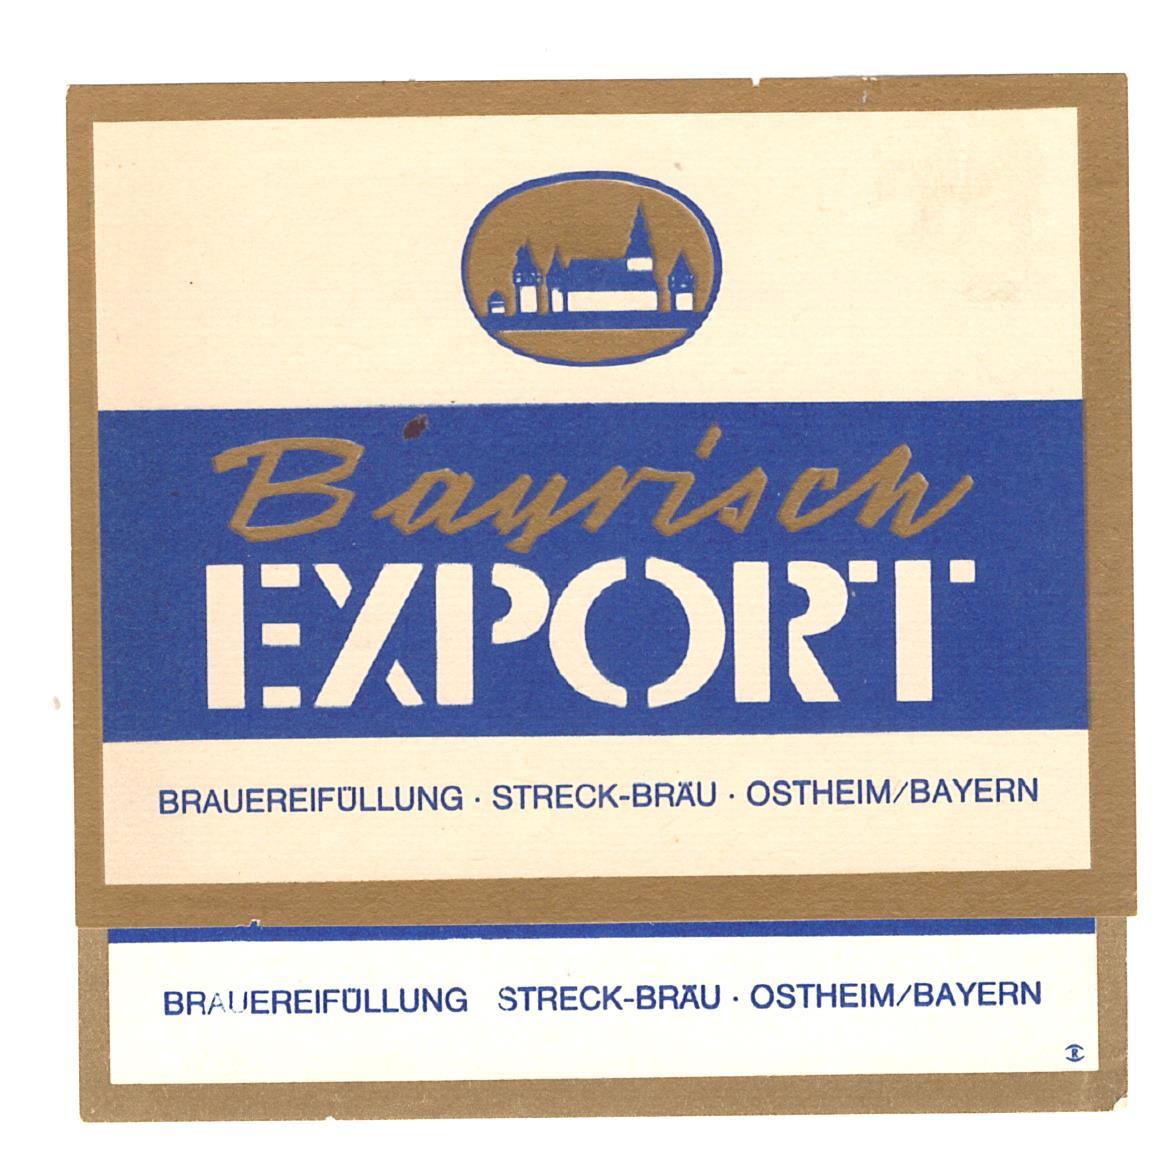 Zberateľstvo-Nápojový priemysel-pivné etikety-Nemecko - Pivo a súvisiace predmety